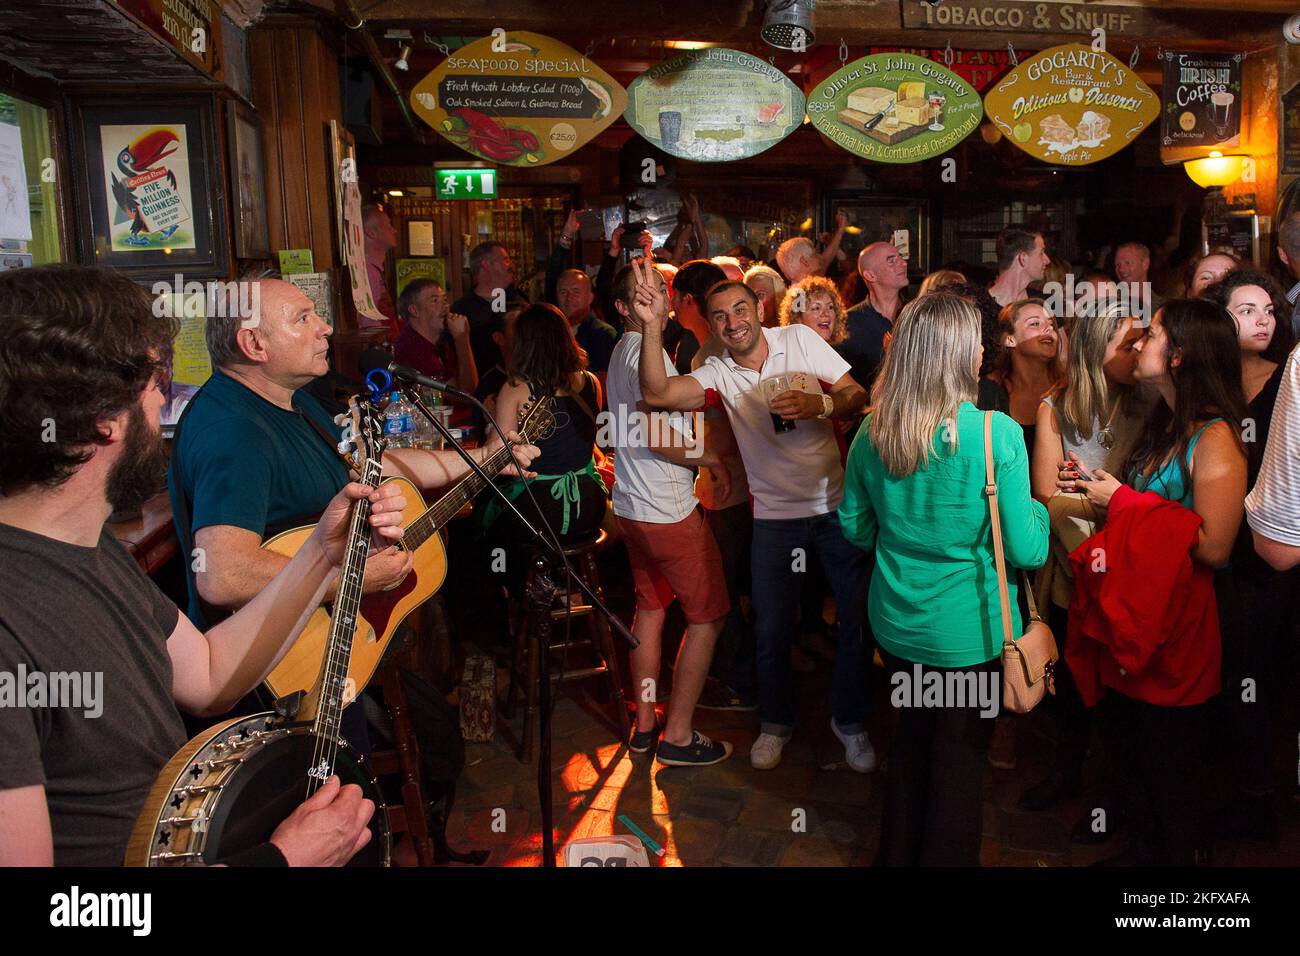 Samedi soir dans le qurtier dublinois de temple bar.. entre football et music. Les bars et les rues s'emplissent d'une ambiance incroyable. Templebar, Stock Photo